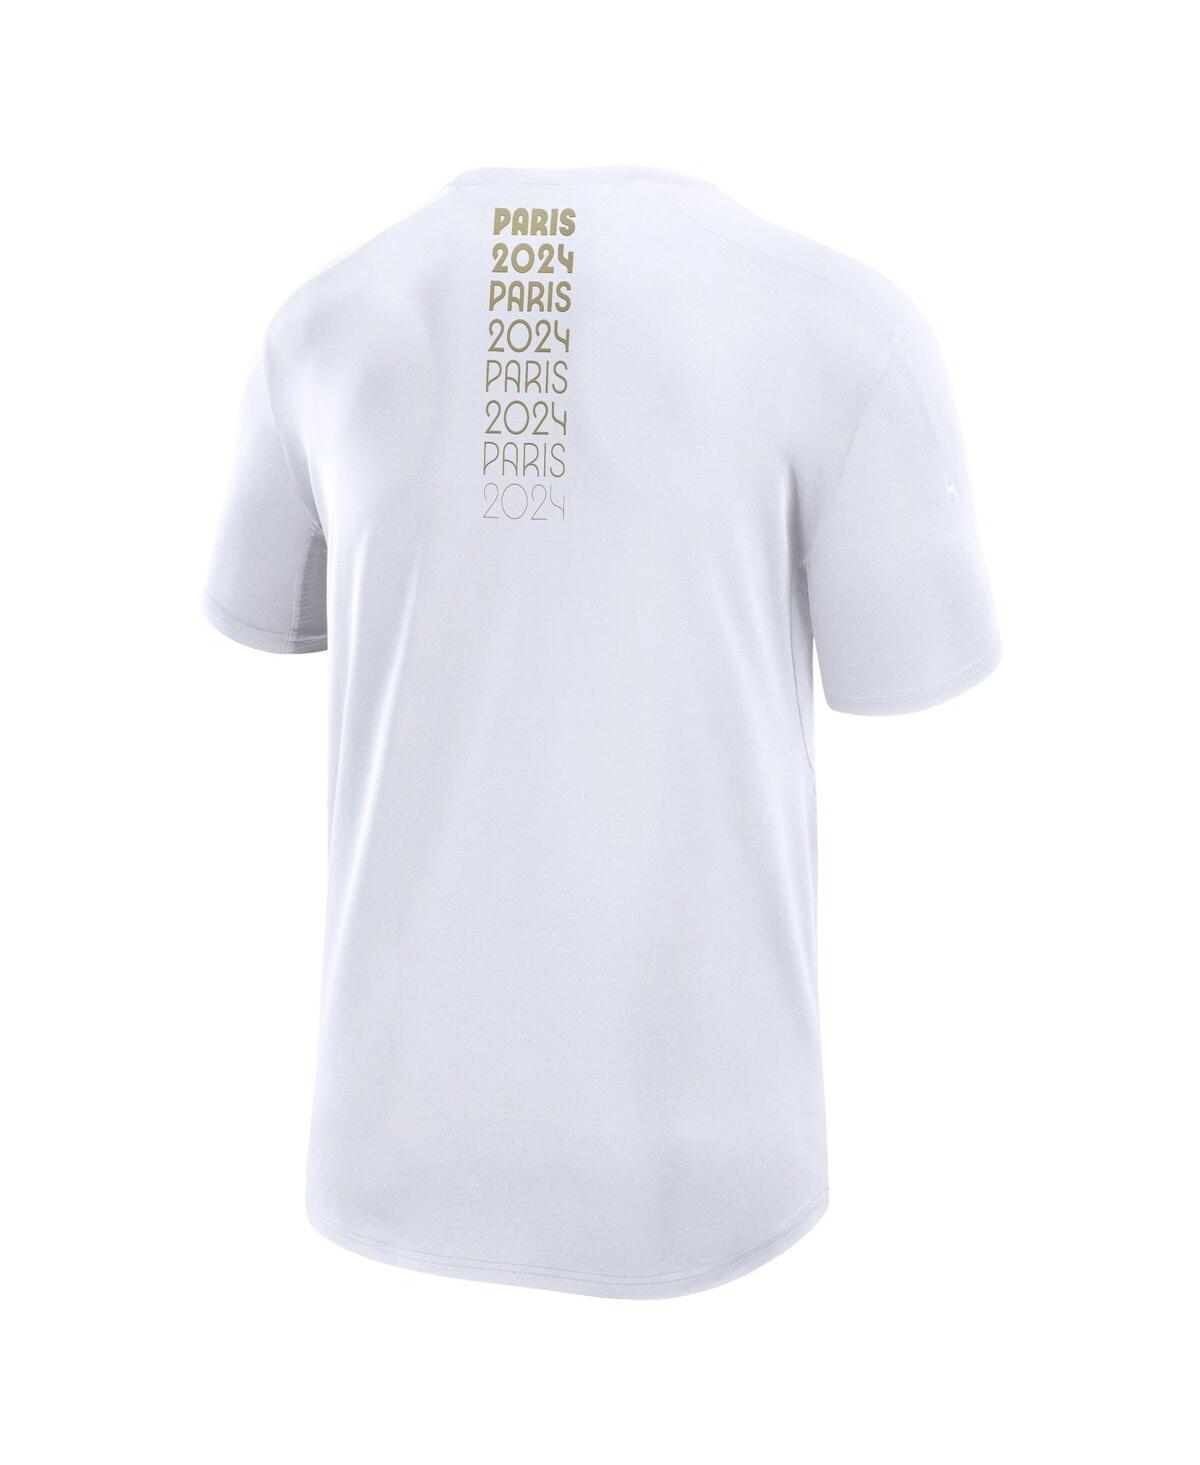 Shop Fanatics Branded Men's White Paris 2024 Tech T-shirt